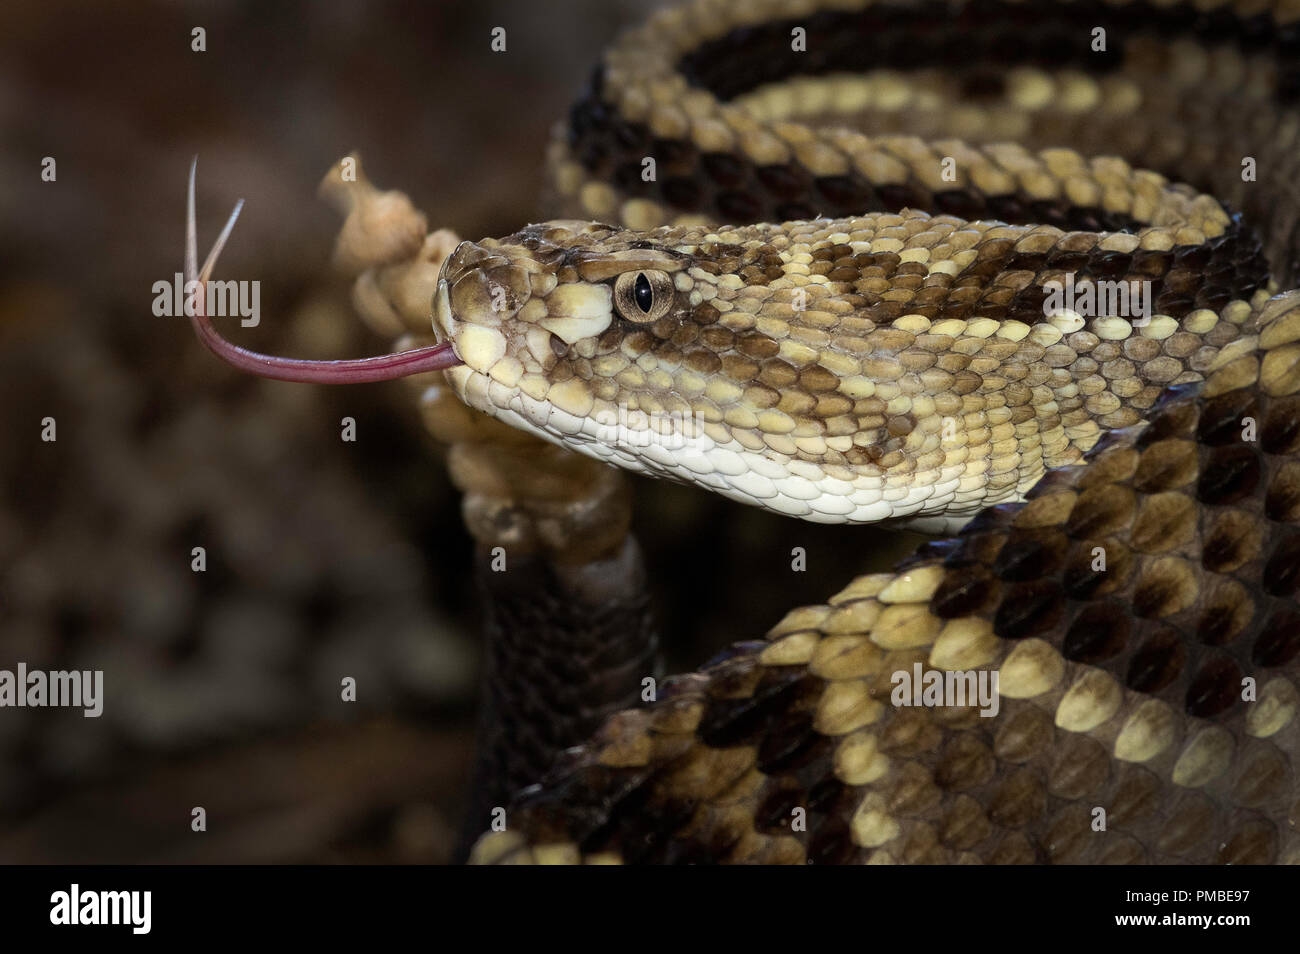 Retrato de una serpiente cascabel neotropicales de América central. Foto de stock